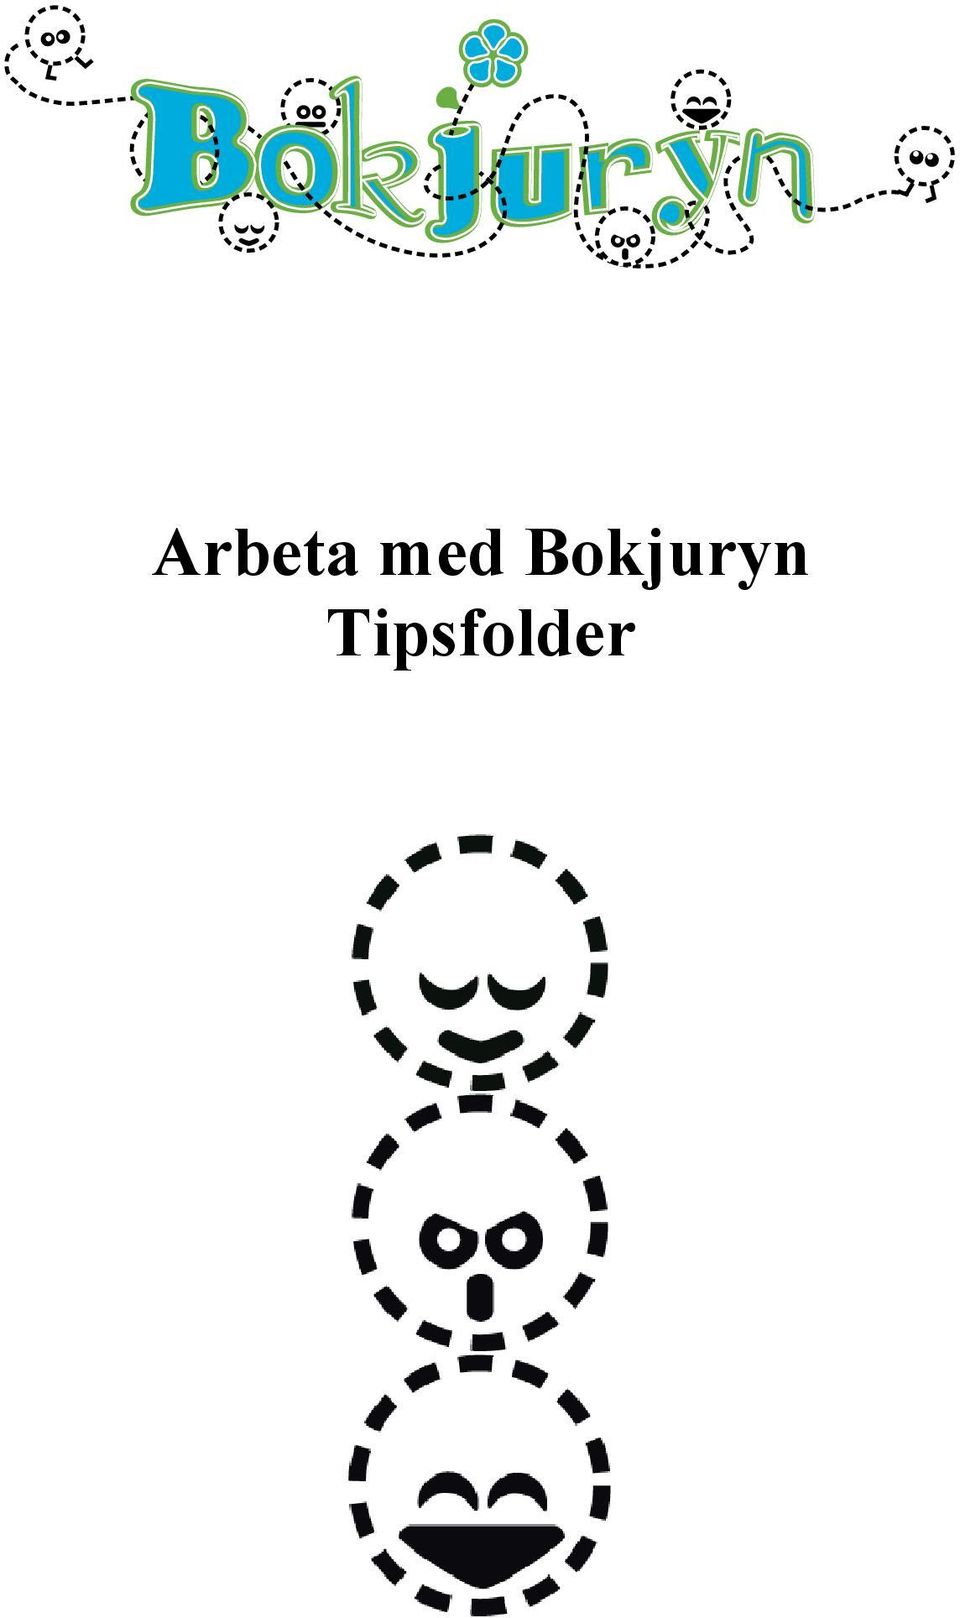 Arbeta med Bokjuryn Tipsfolder - PDF Gratis nedladdning